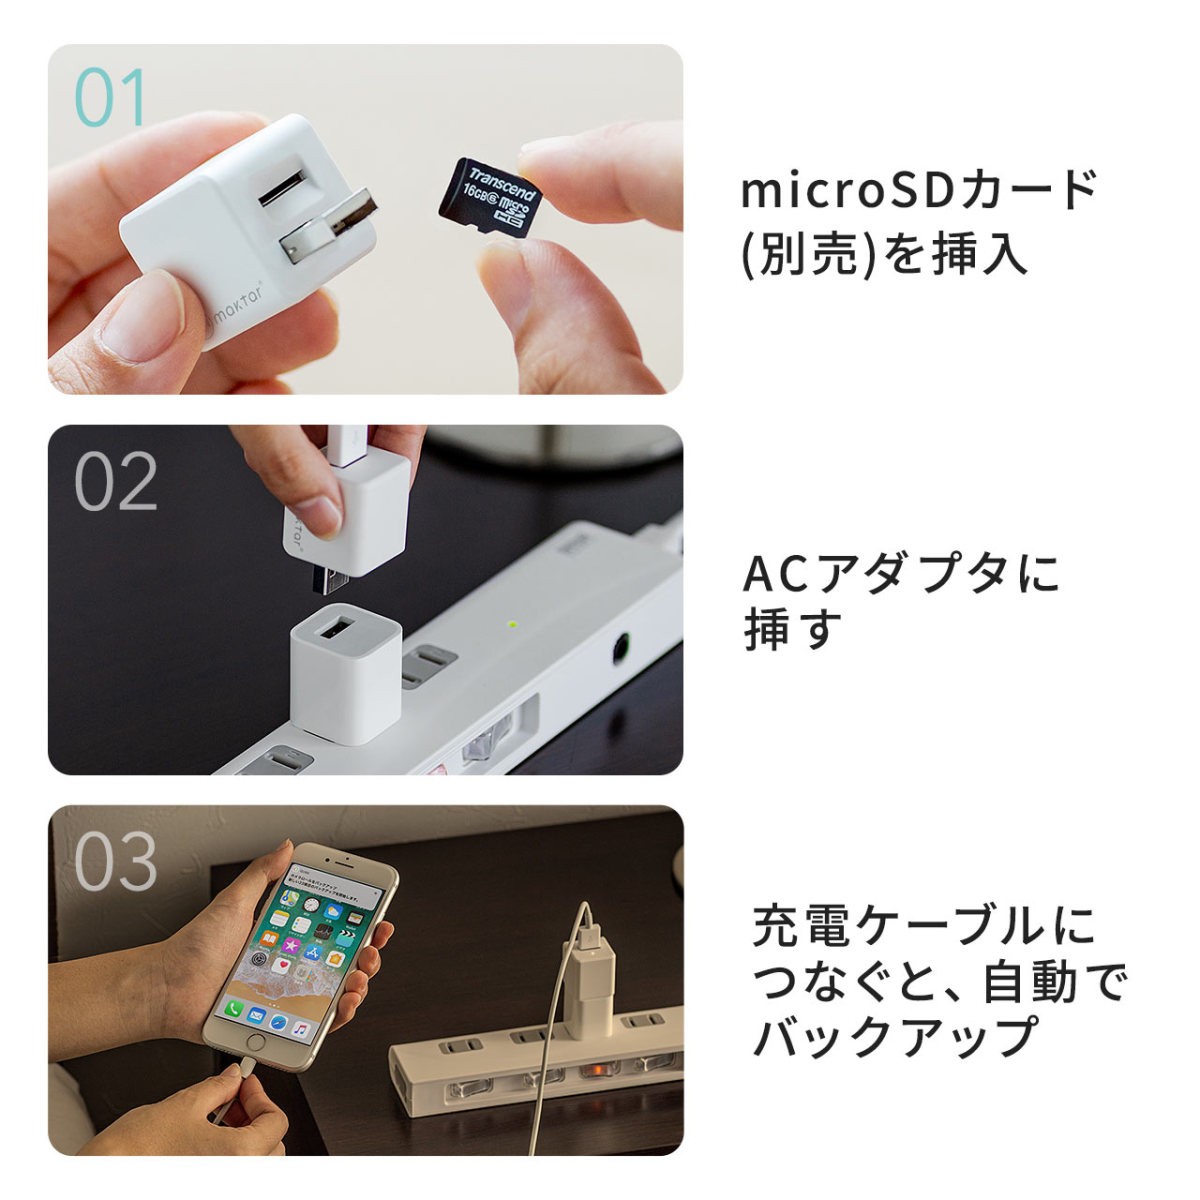 qubii iPhoneバックアップ iPadバックアップ iPhoneカードリーダー 自動 microSD 充電 カードリーダ ライタ qubii データ保存 400-ADRIP010W